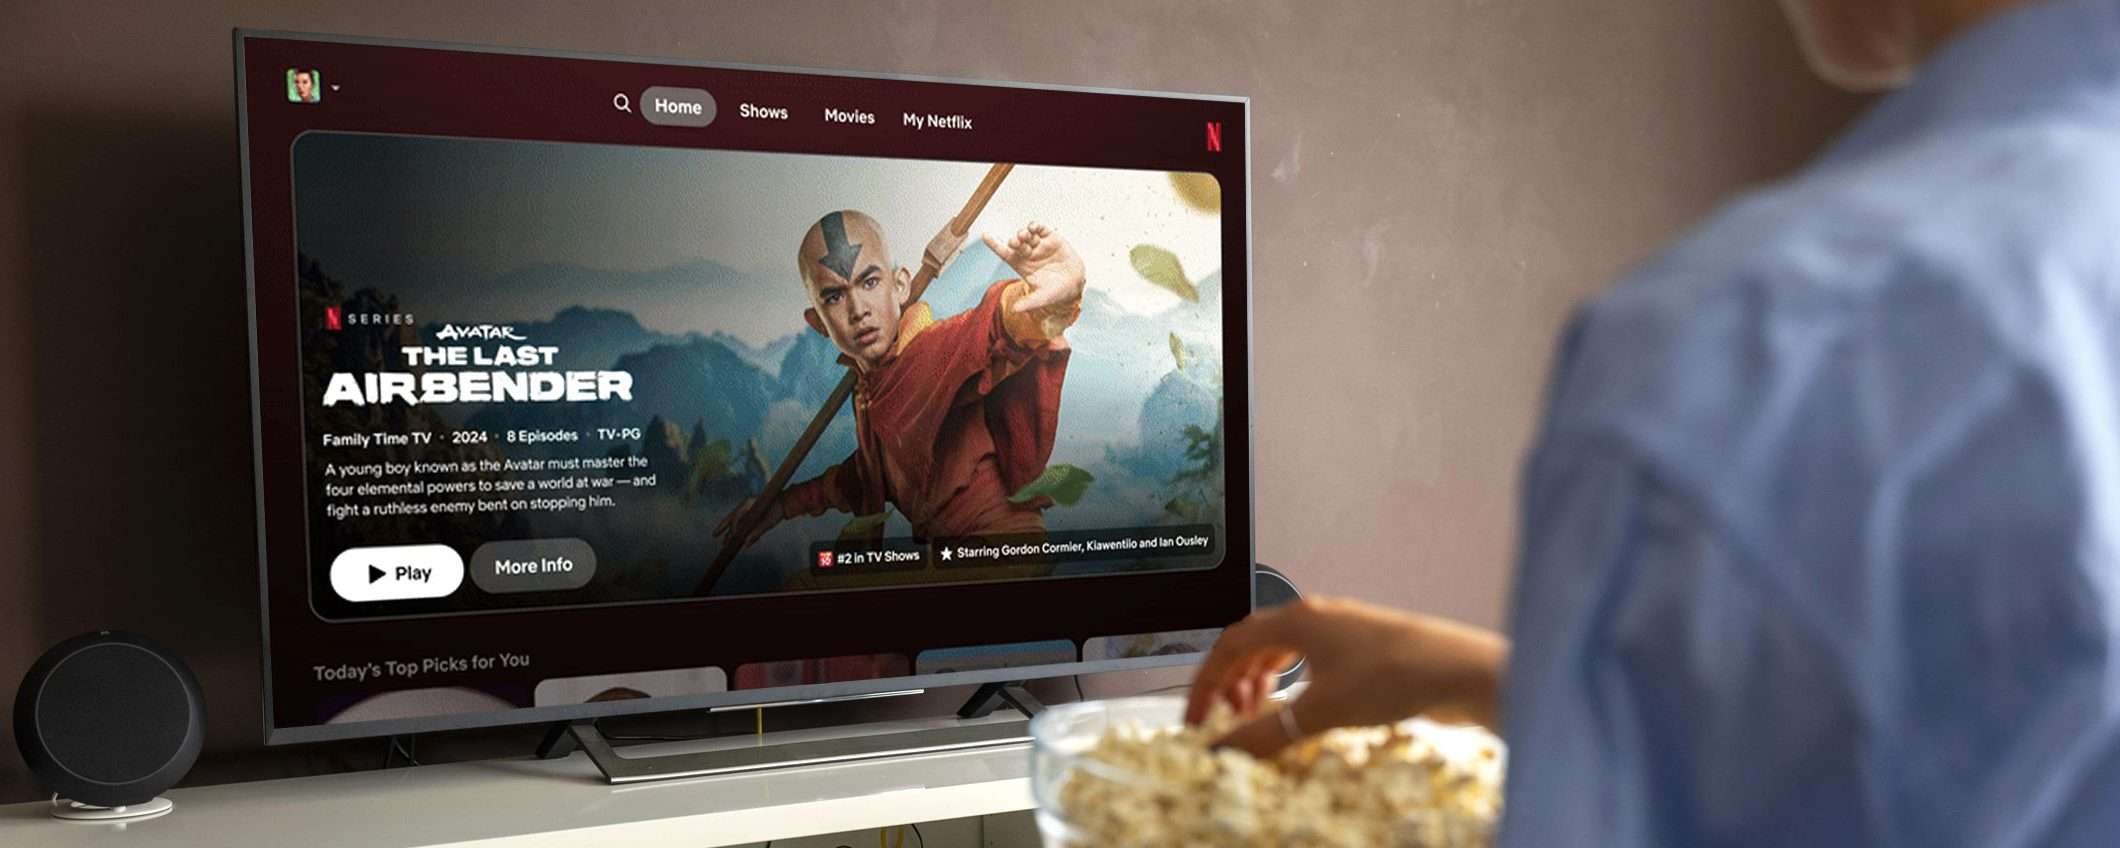 Netflix cambia interfaccia sulle TV: la nuova UI